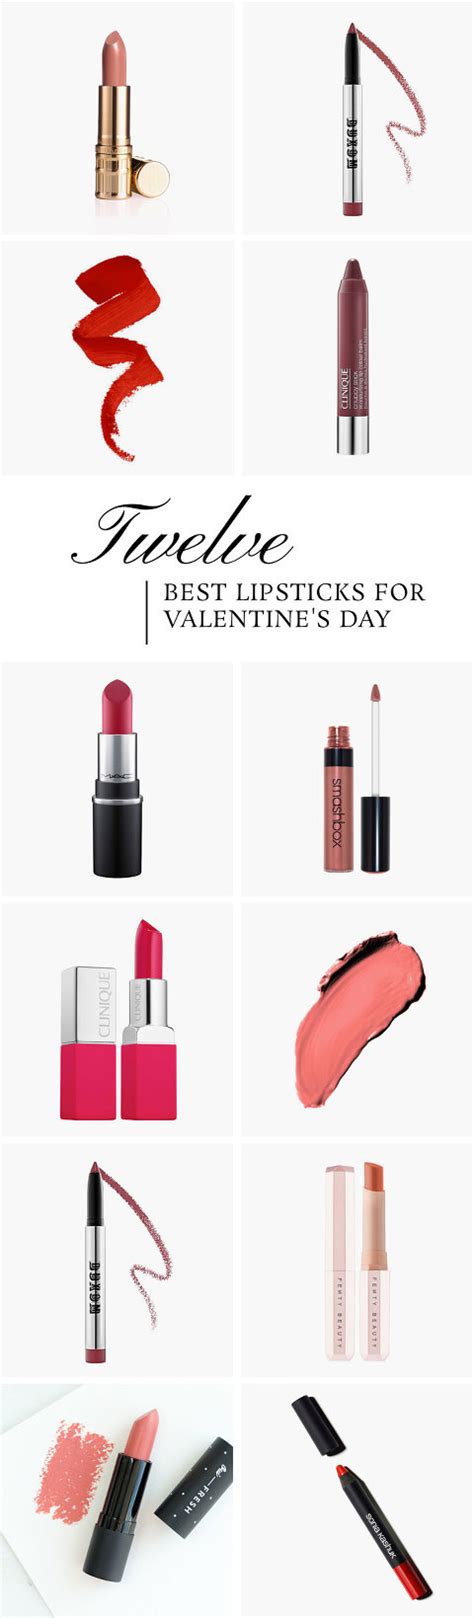 12 Best Lipsticks For Valentines Day Dream Green Diy